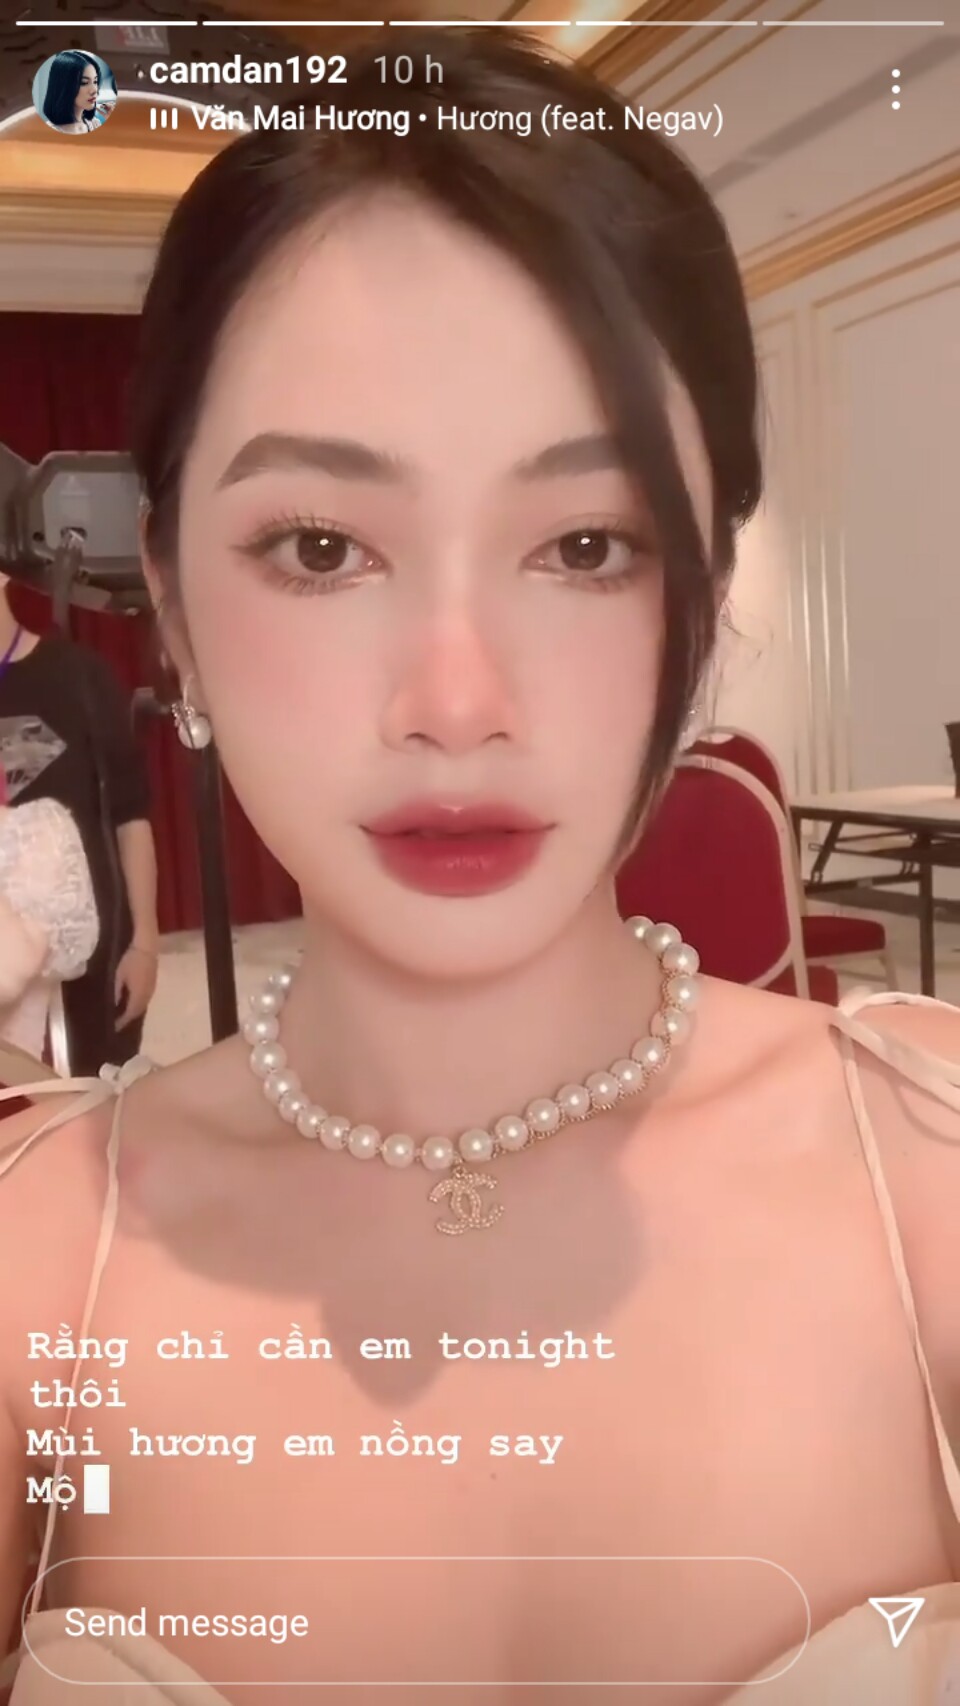 Cẩm Đan khoe nhan sắc thời được khen xinh nhất Hoa hậu Việt Nam 2020 - Ảnh 3